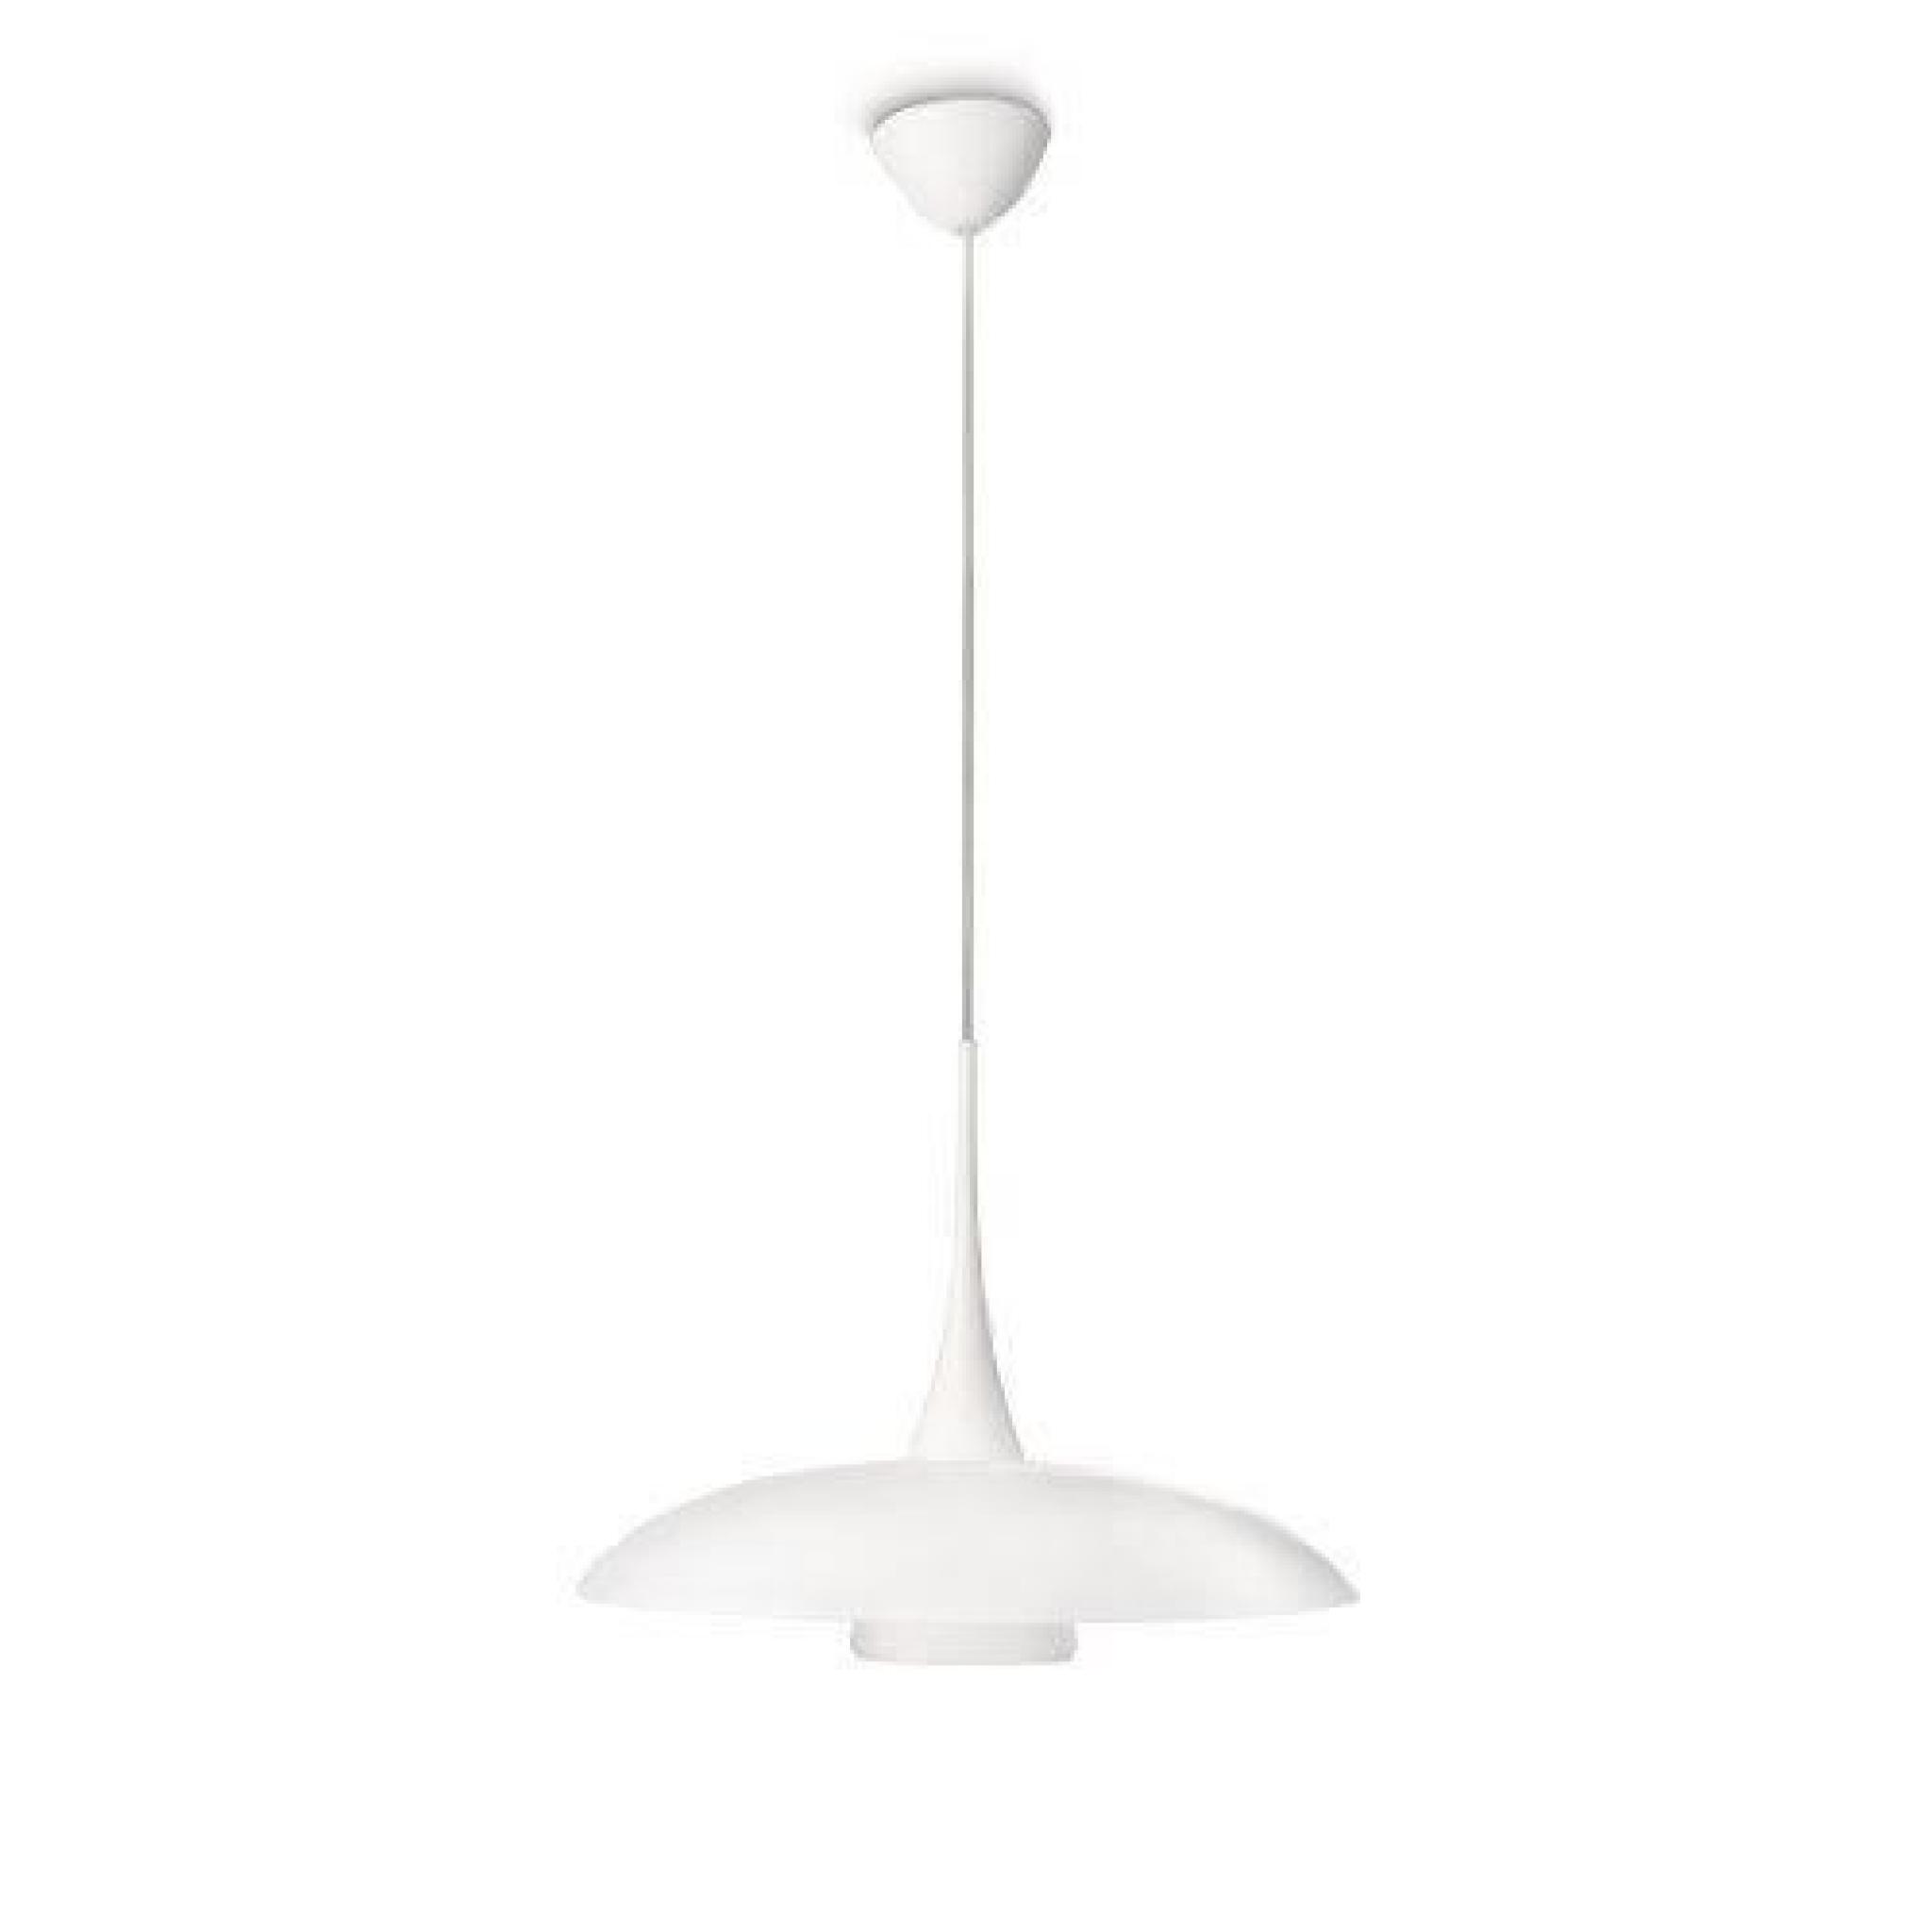 Philips 40857/31/16 - Lampe Salon Et Chambre à Coucher, Blanc, Verre, E27, Blanc Chaud 2700k, Fluorescent 230 V